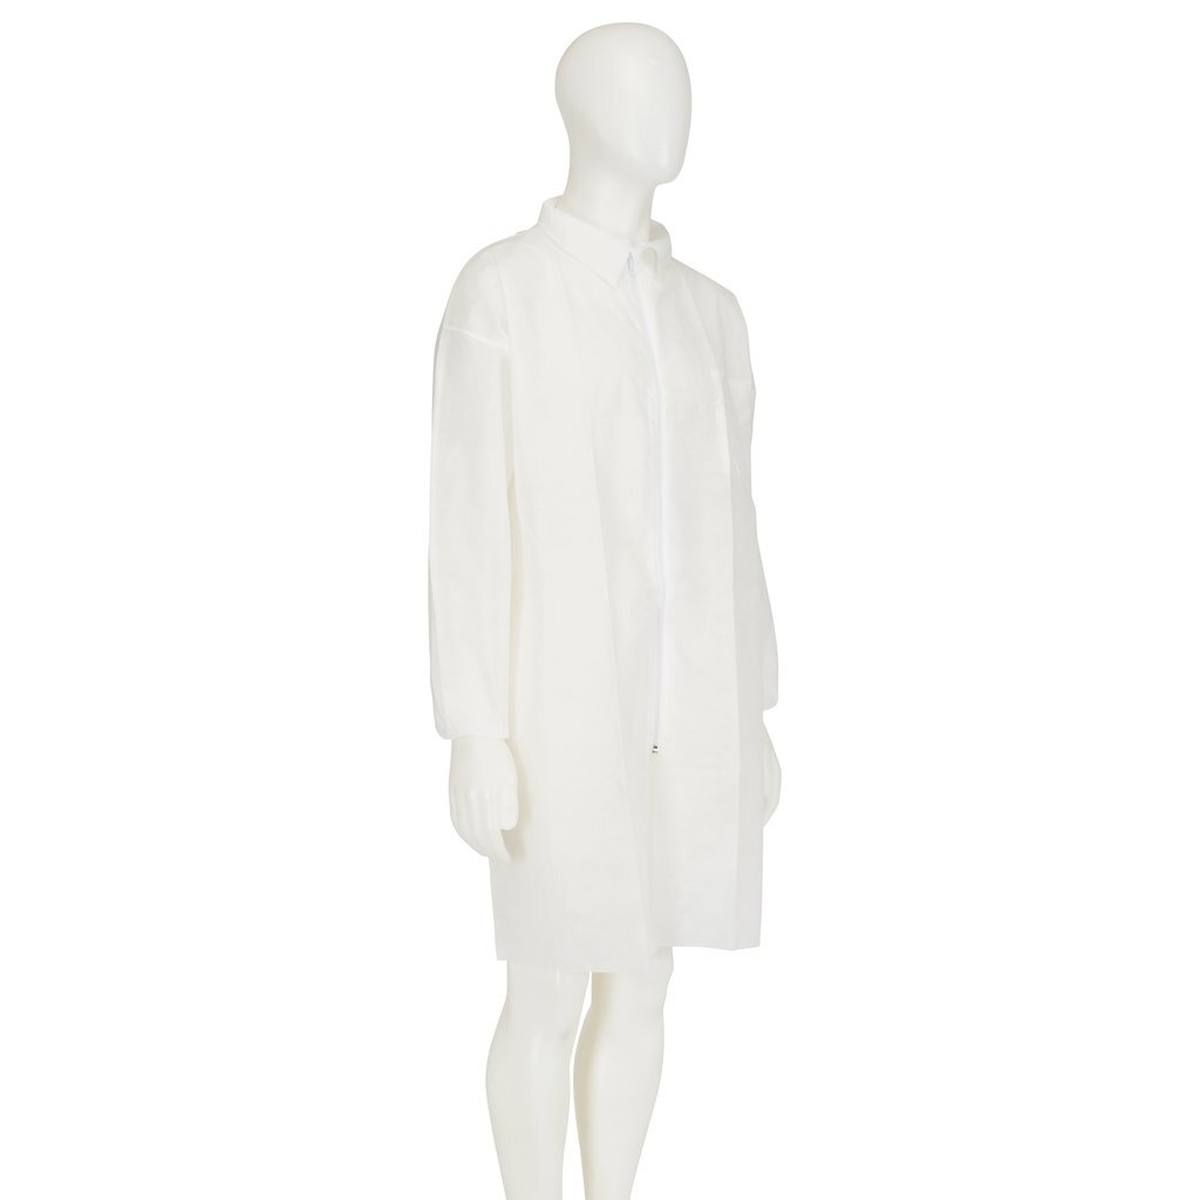 cappotto 3M 4400, bianco, taglia 2XL, materiale 100% polipropilene, traspirante, molto leggero, con chiusura a zip